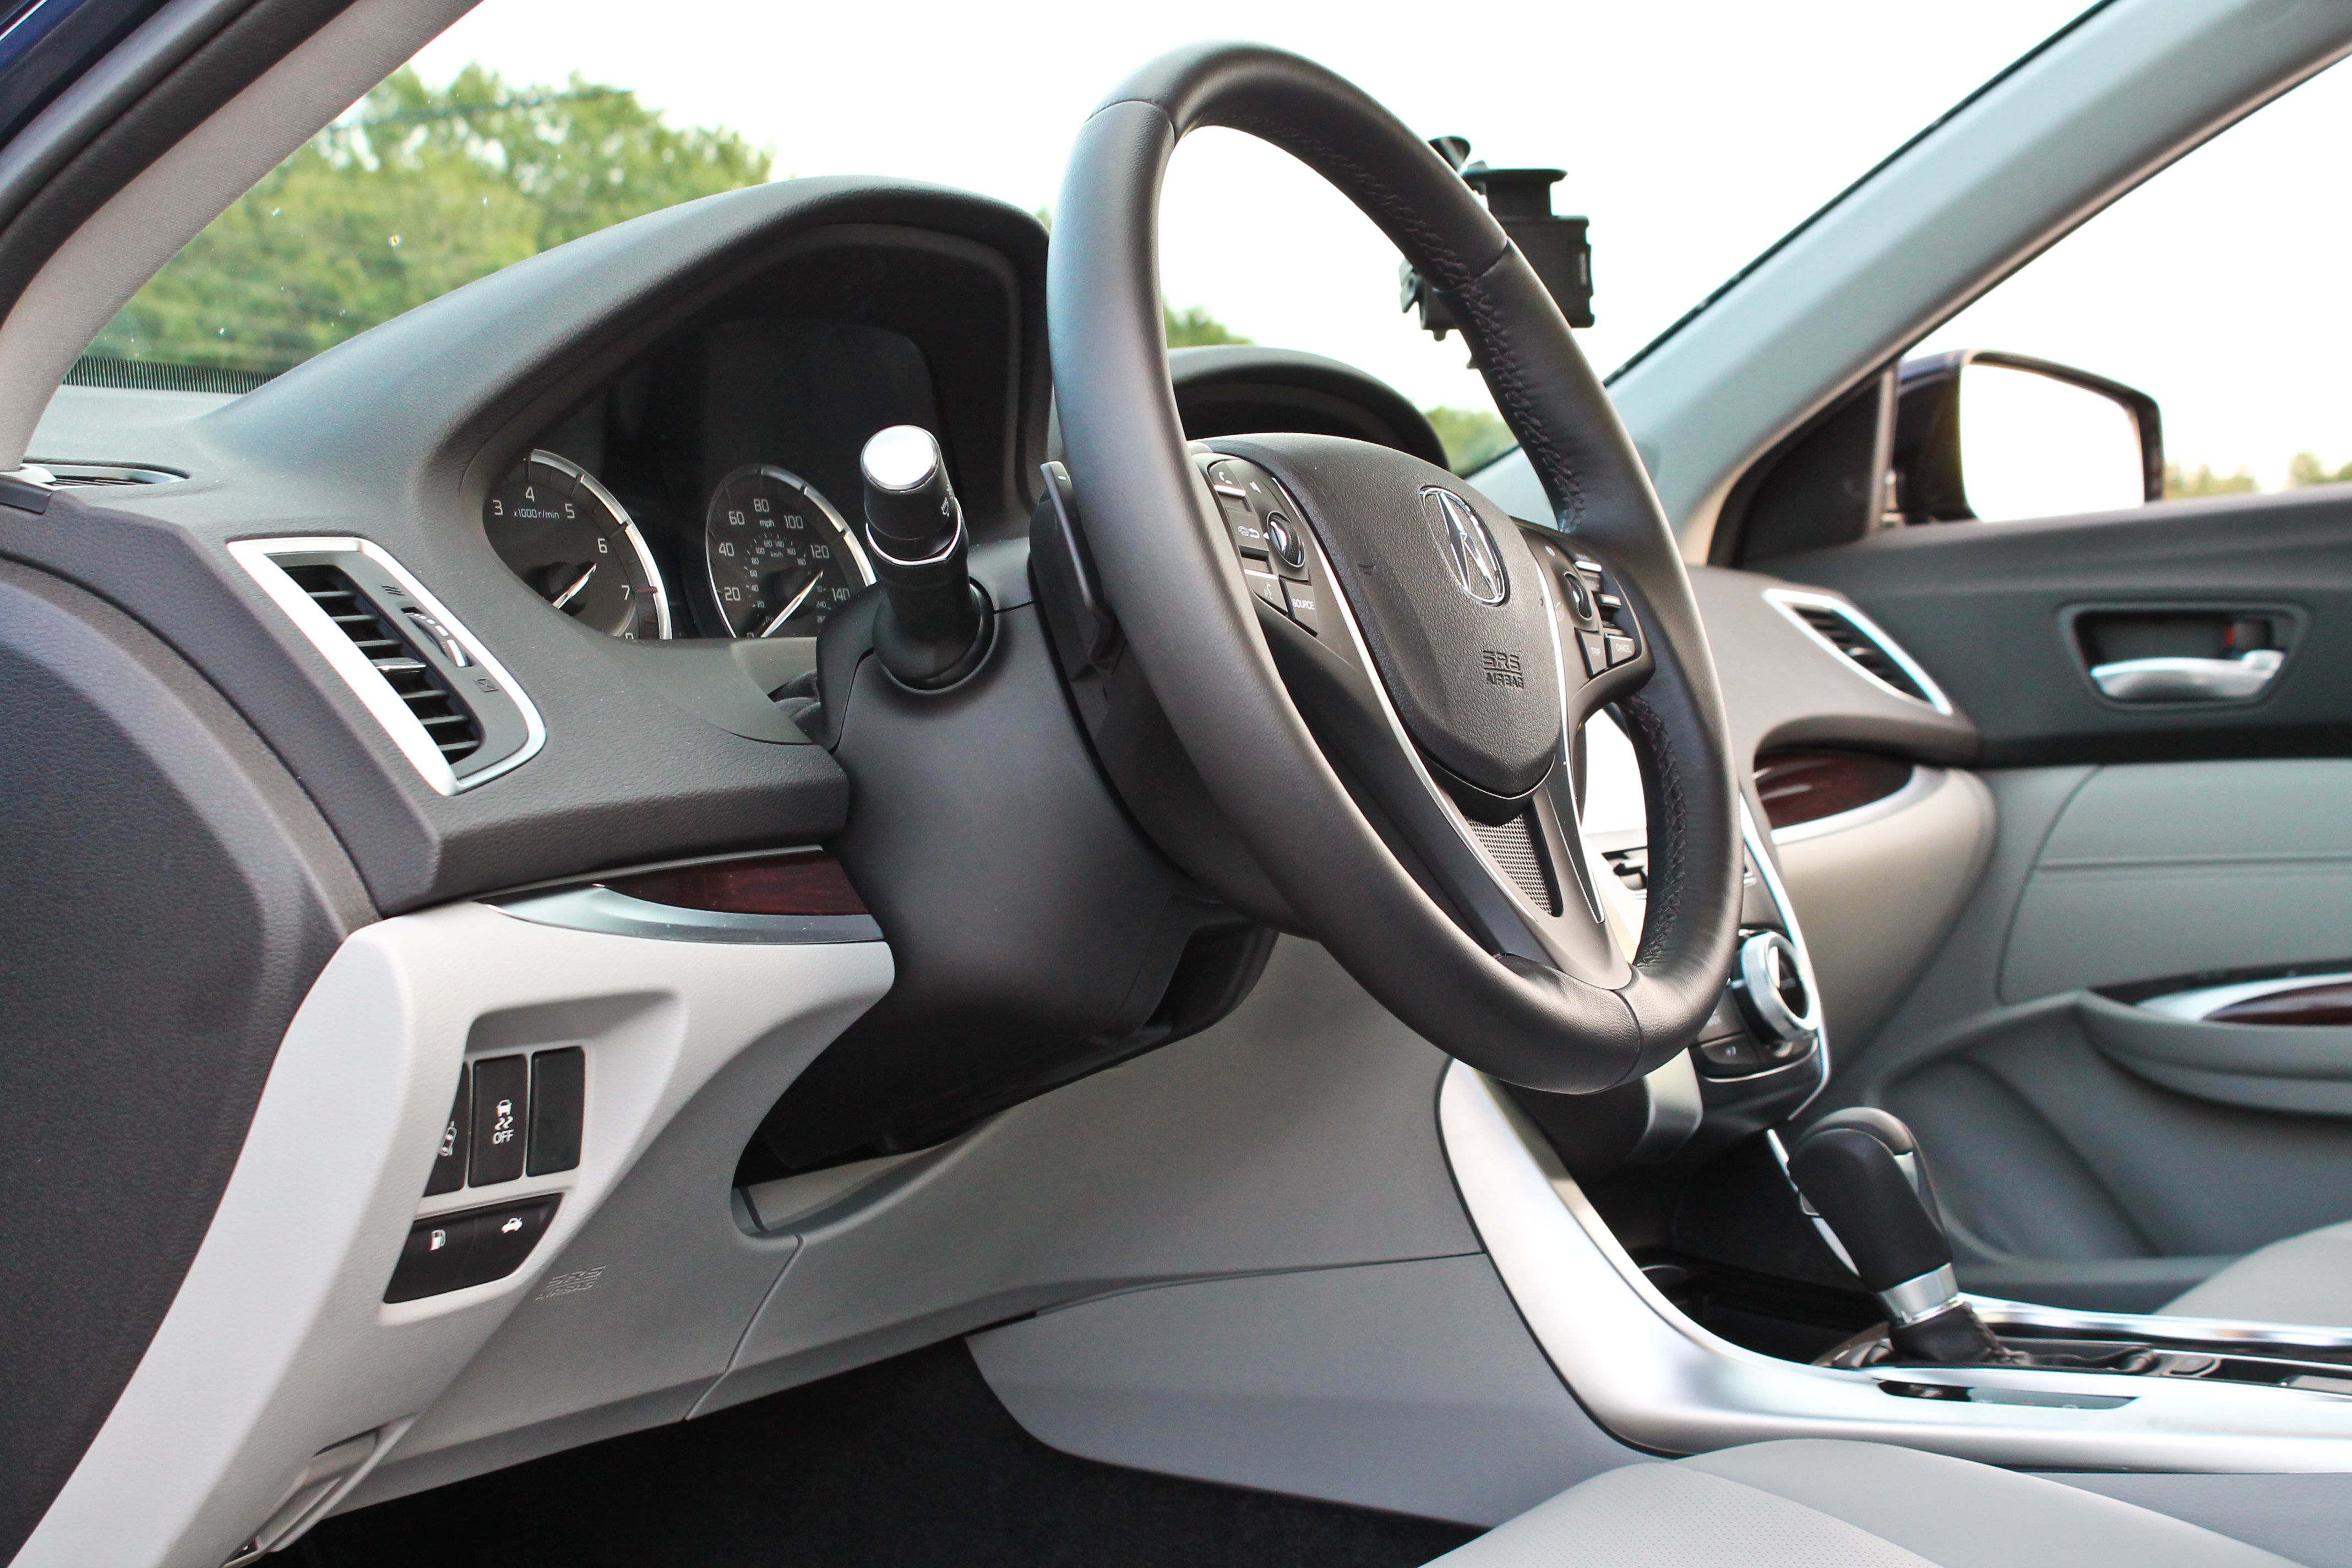 2015 Acura TLX - Driven